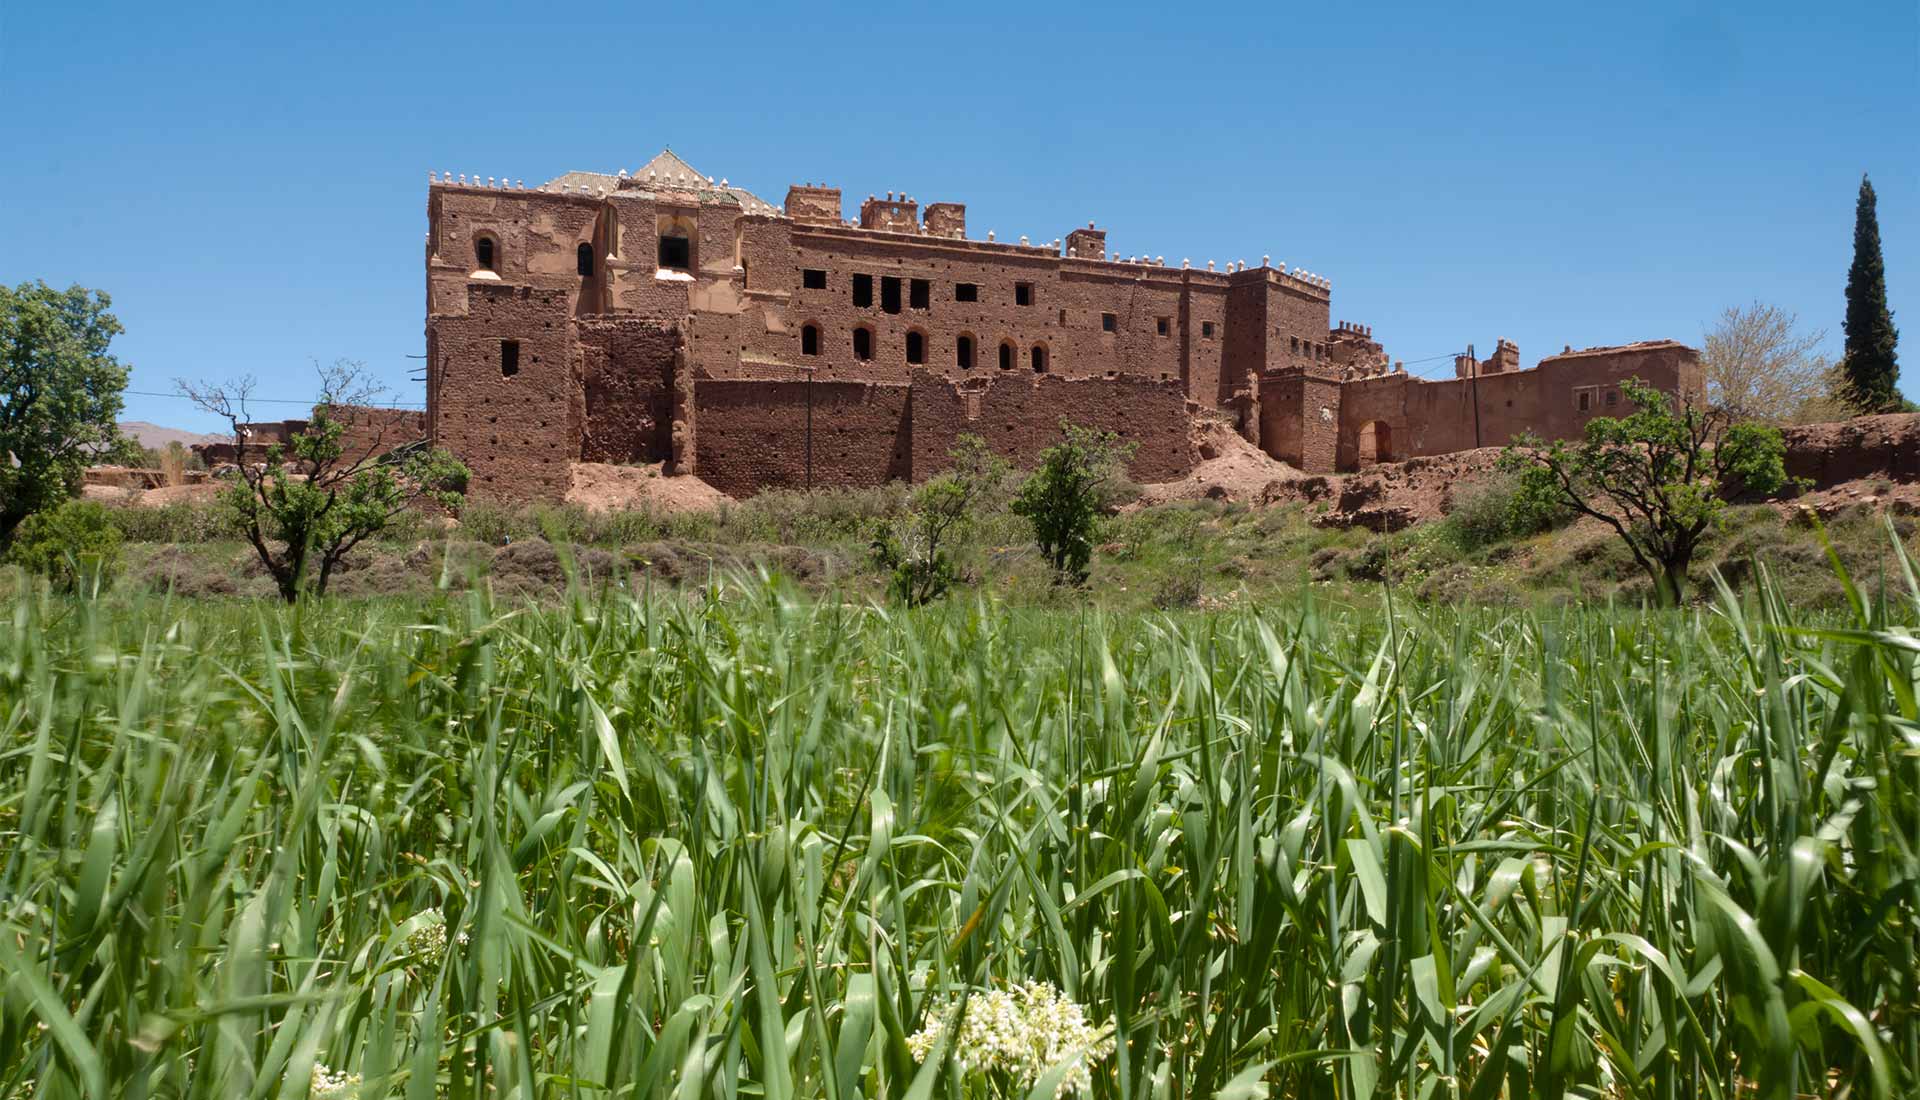 La vieille casbah de Telouet est laissée à l'abandon alors qu'elle porte la mémoire de la région de Ouarzazate